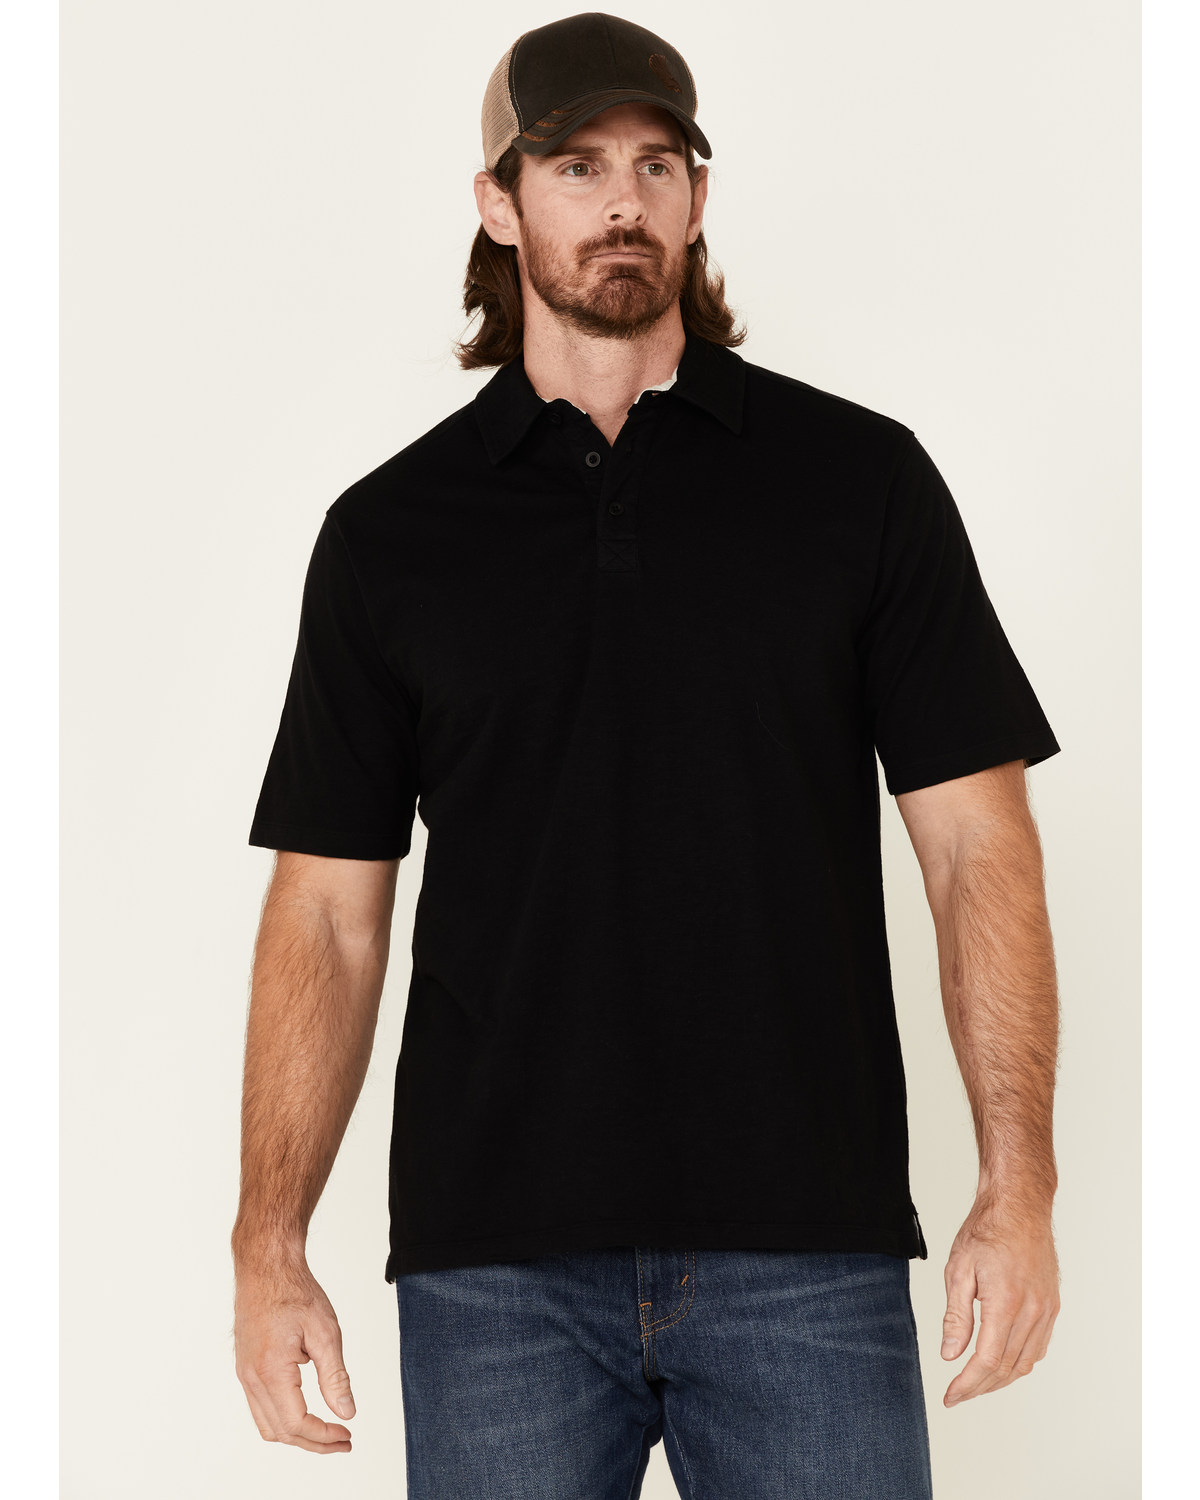 North River Men's Solid Slub Short Sleeve Polo Shirt